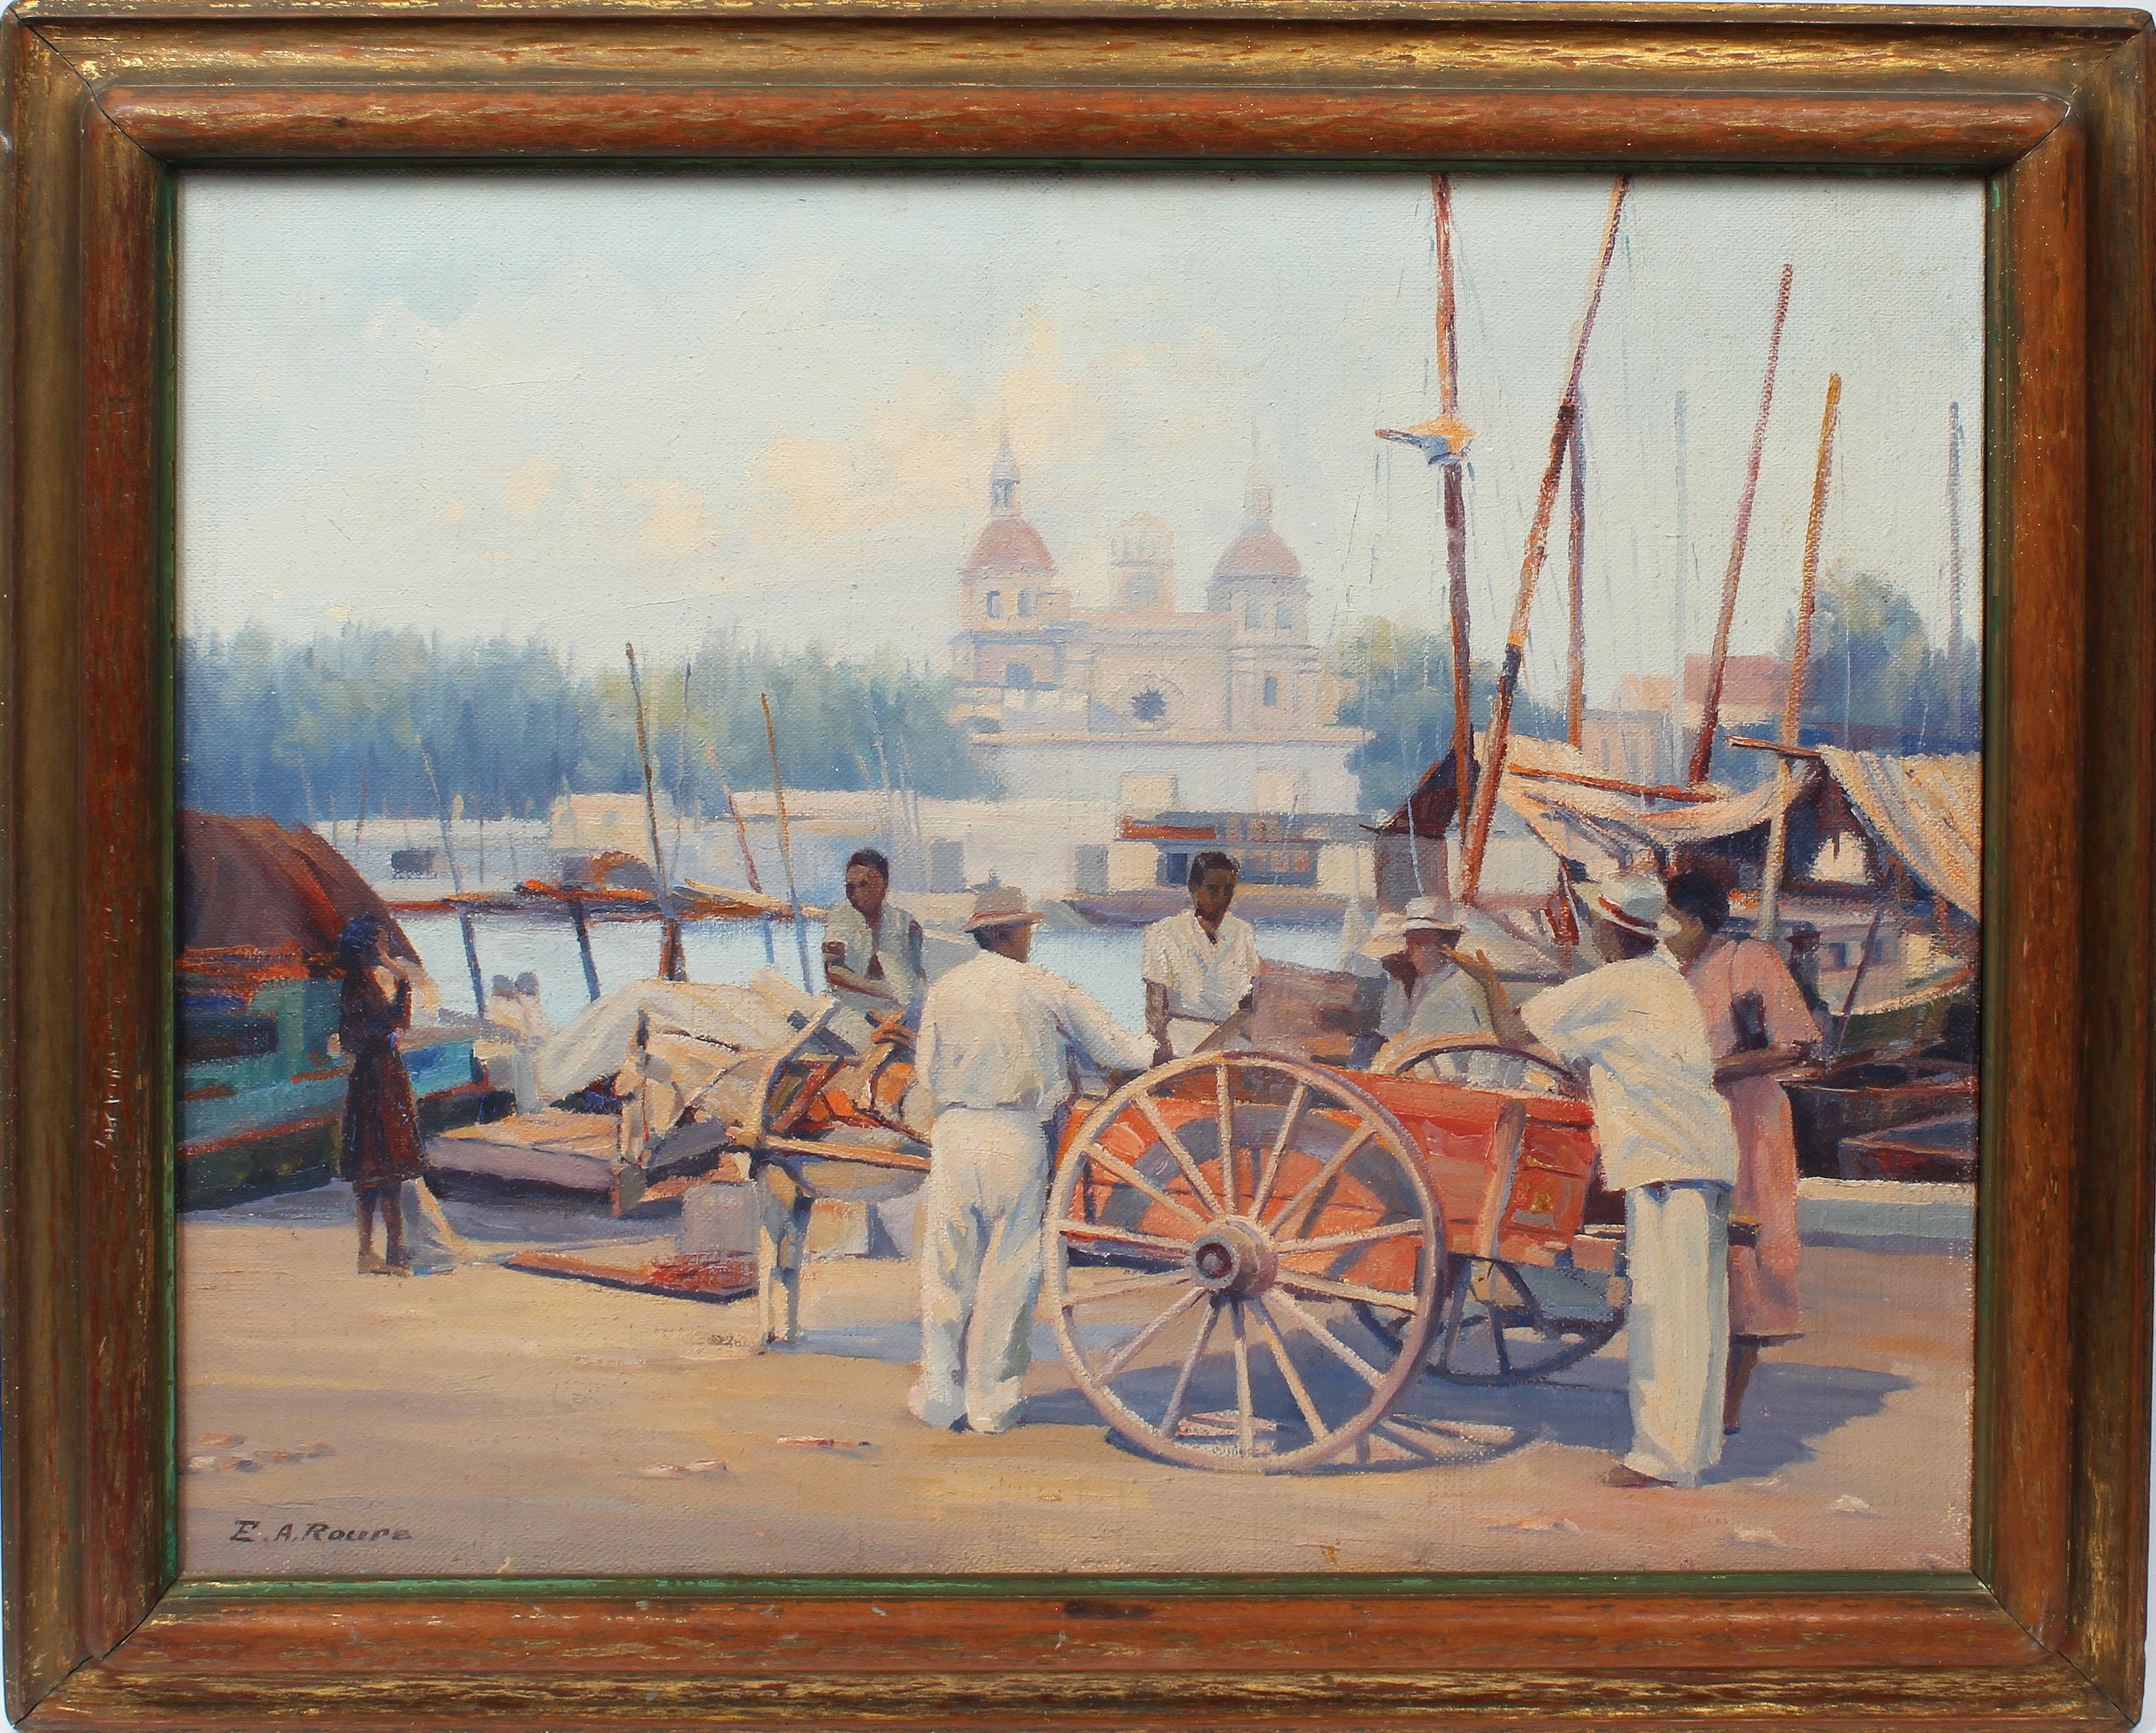 Emile A. Roure Landscape Painting - Antique American Impressionist Tropical Port Black Figure & Market Oil Painting